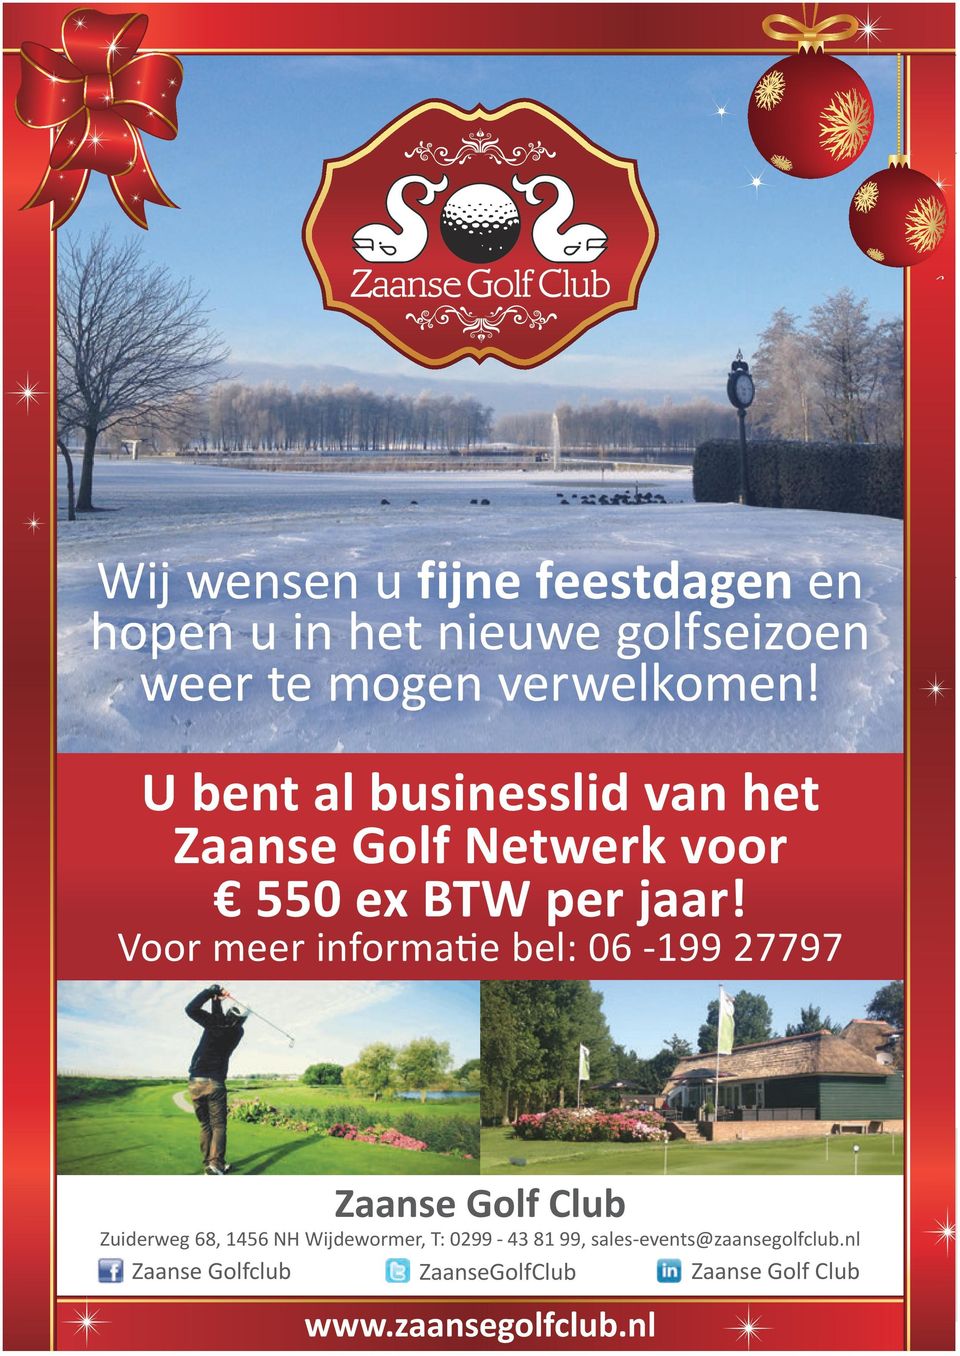 Voor meer informatie bel: 06-199 27797 Zaanse Golf Club Zuiderweg 68, 1456 NH Wijdewormer, T: